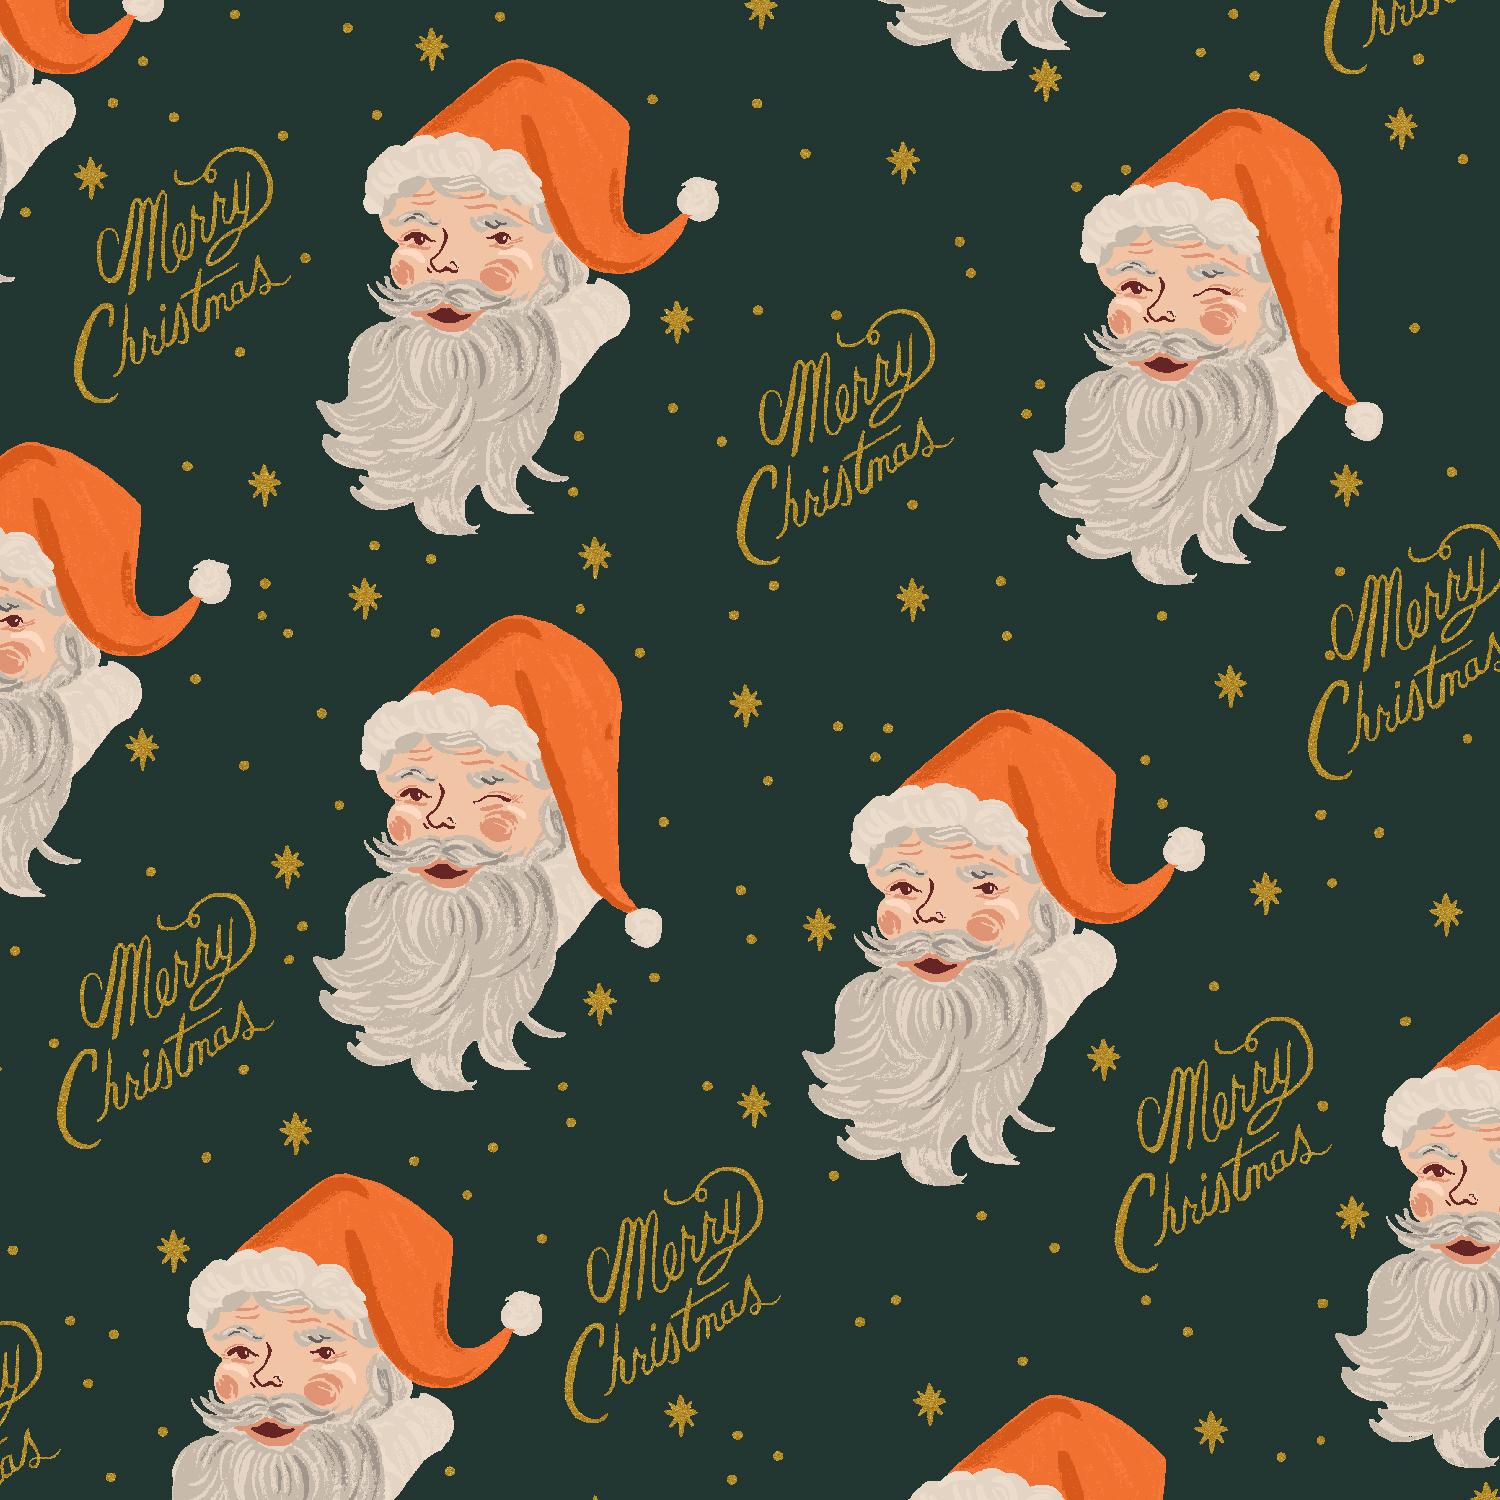 Holiday Classics Santa Evergre